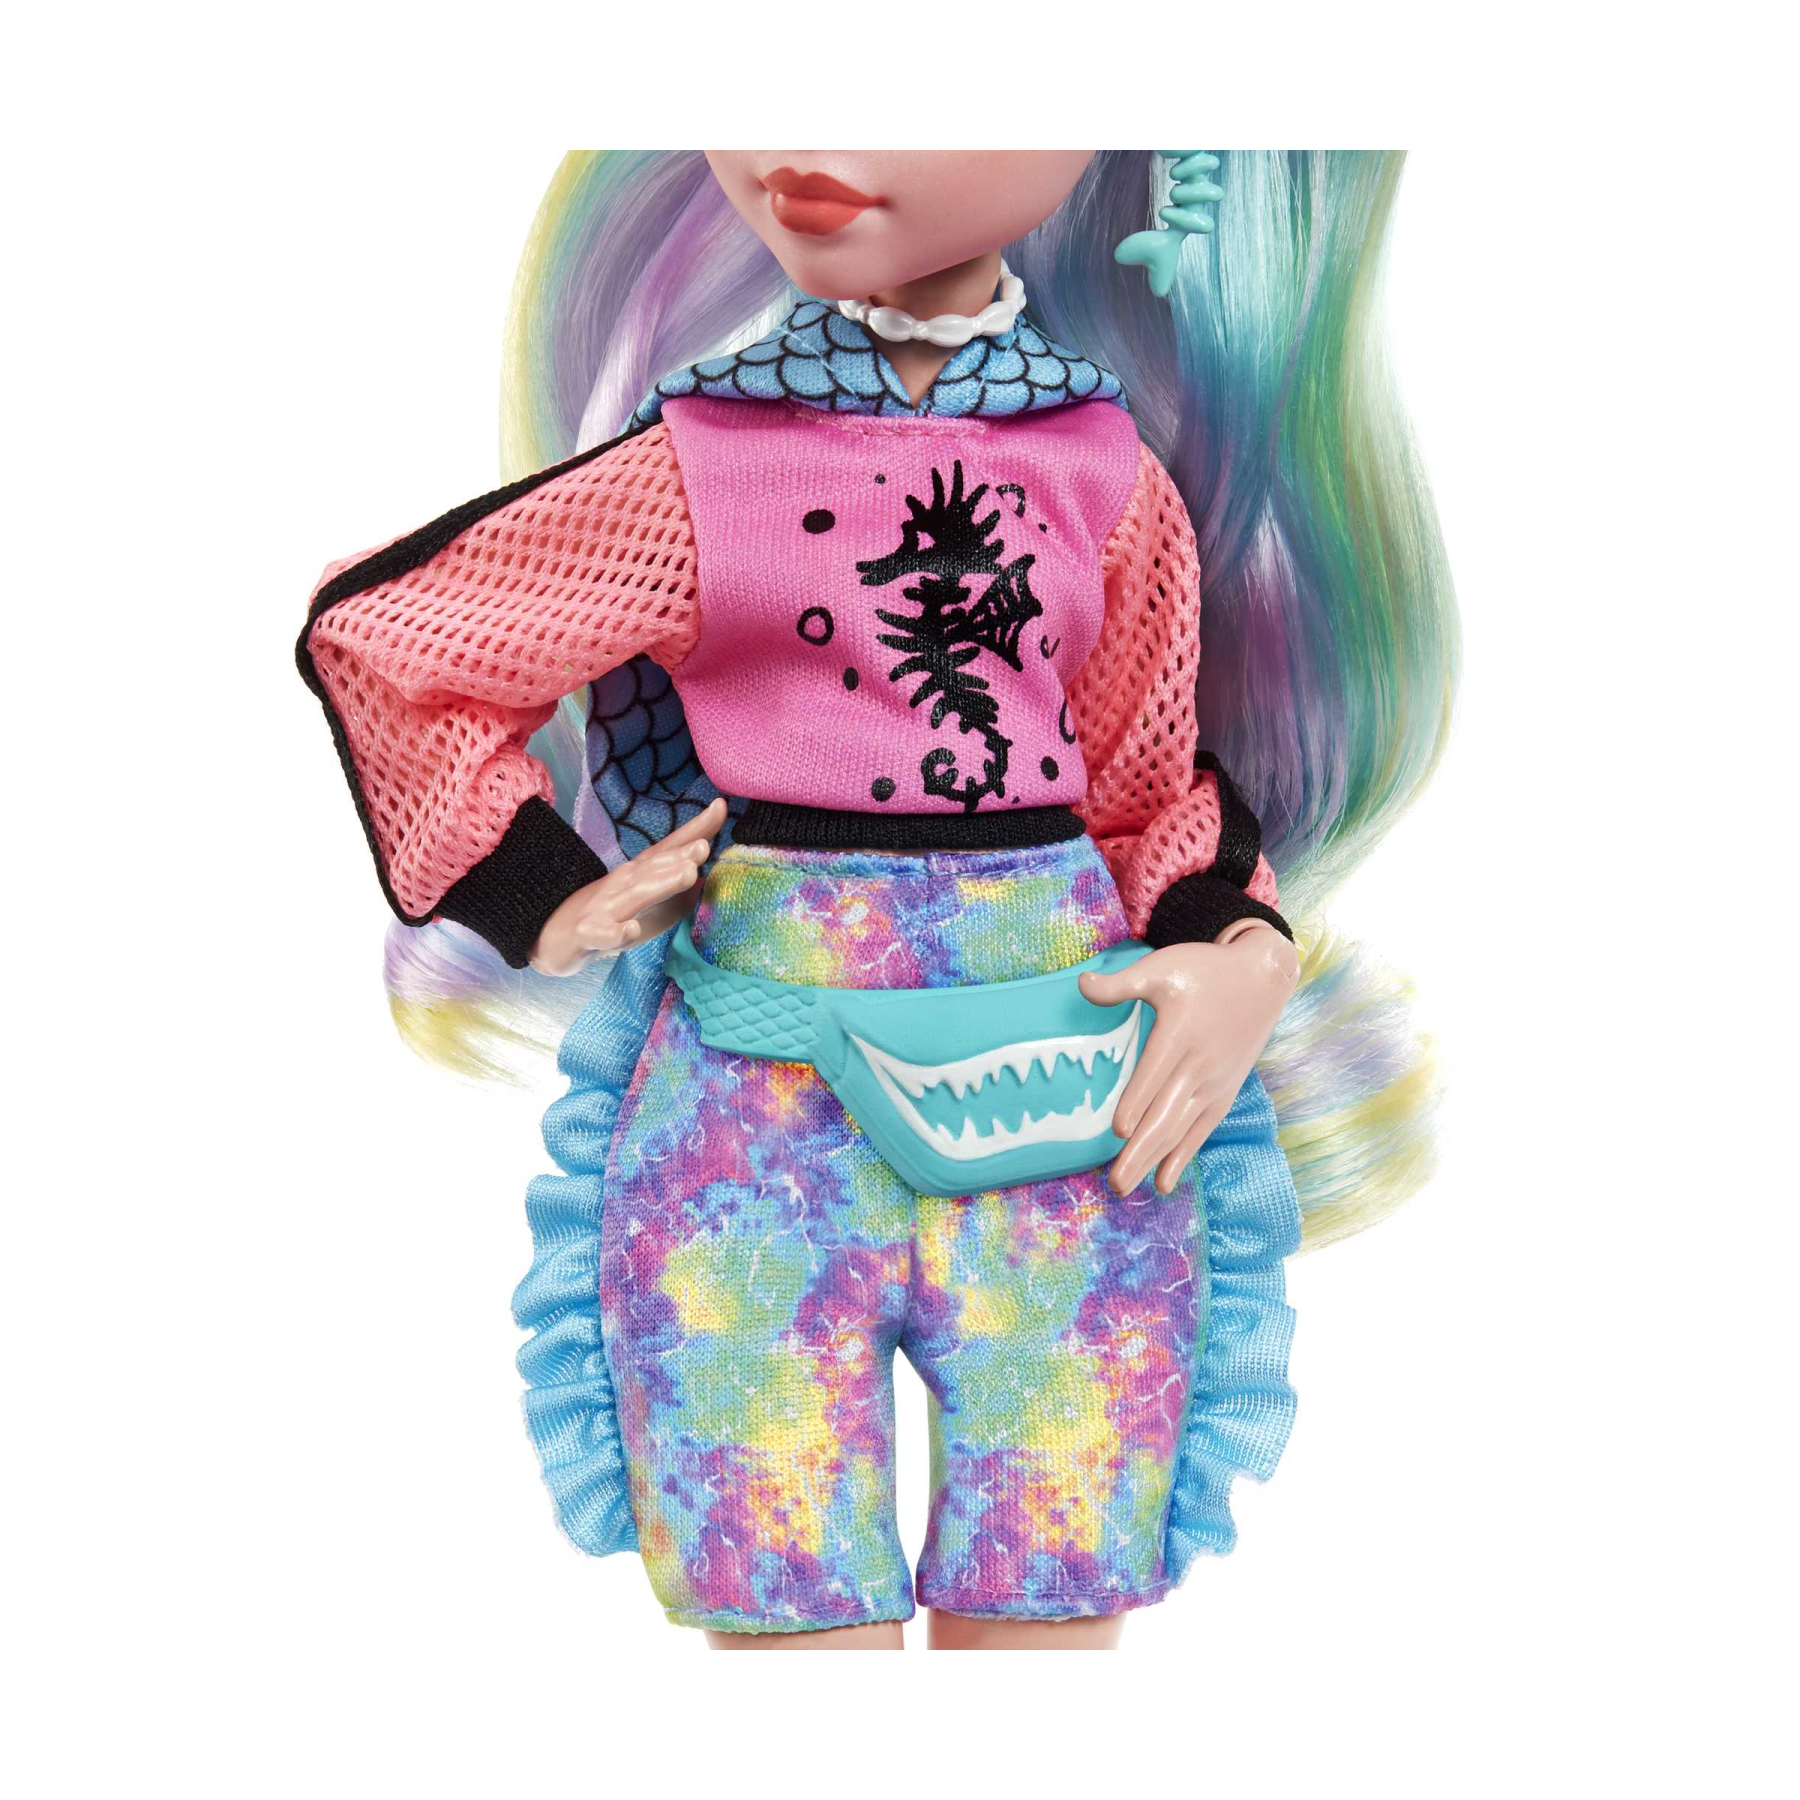 Monster high - lagoona blue, bambola snodata alla moda e capelli con ciocche colorate, con accessori e cucciolo di piranha, giocattolo per bambini, 4+ anni, hhk55 - Monster High